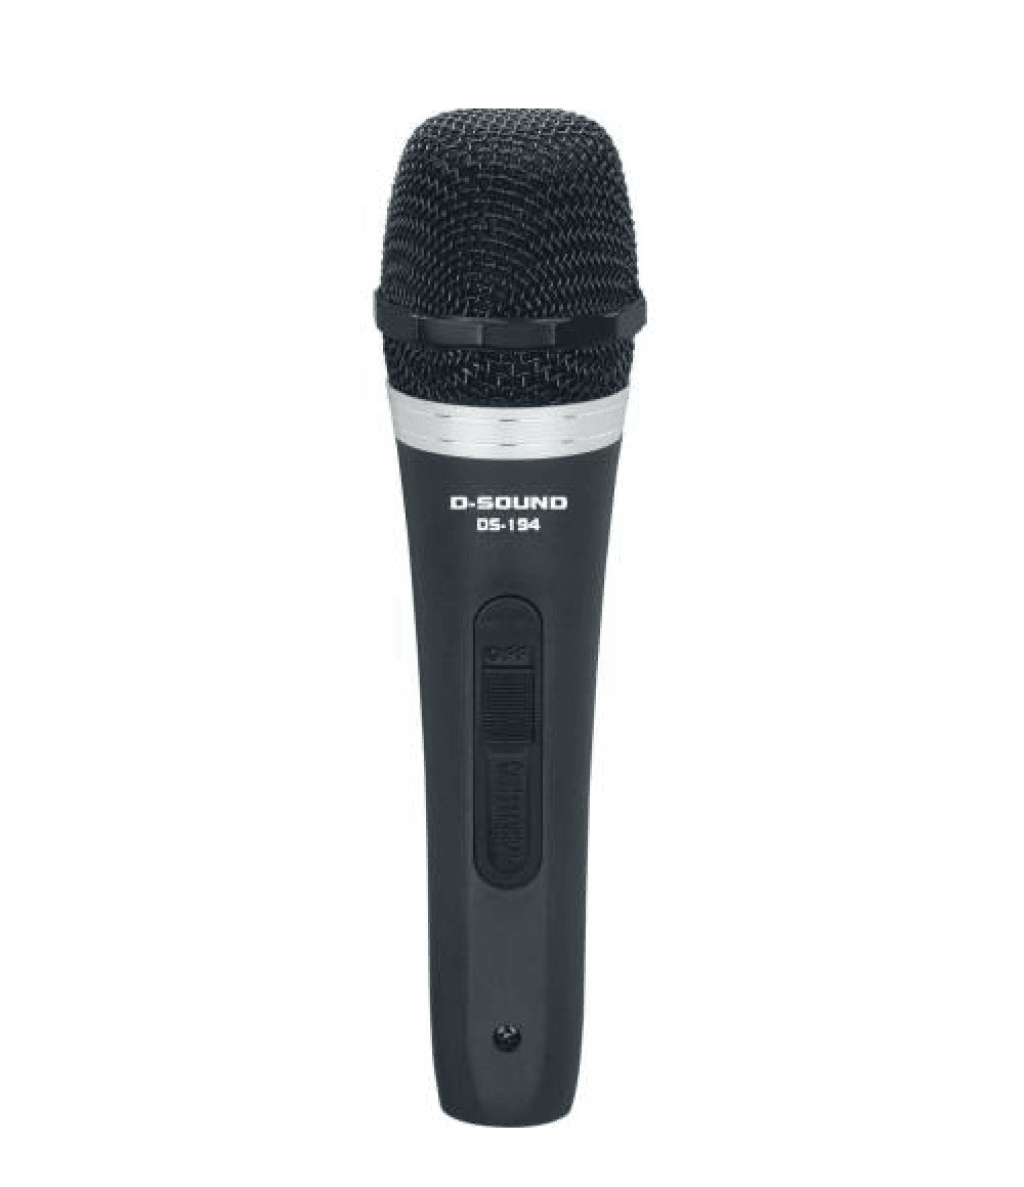  Dynamic Mikrofon